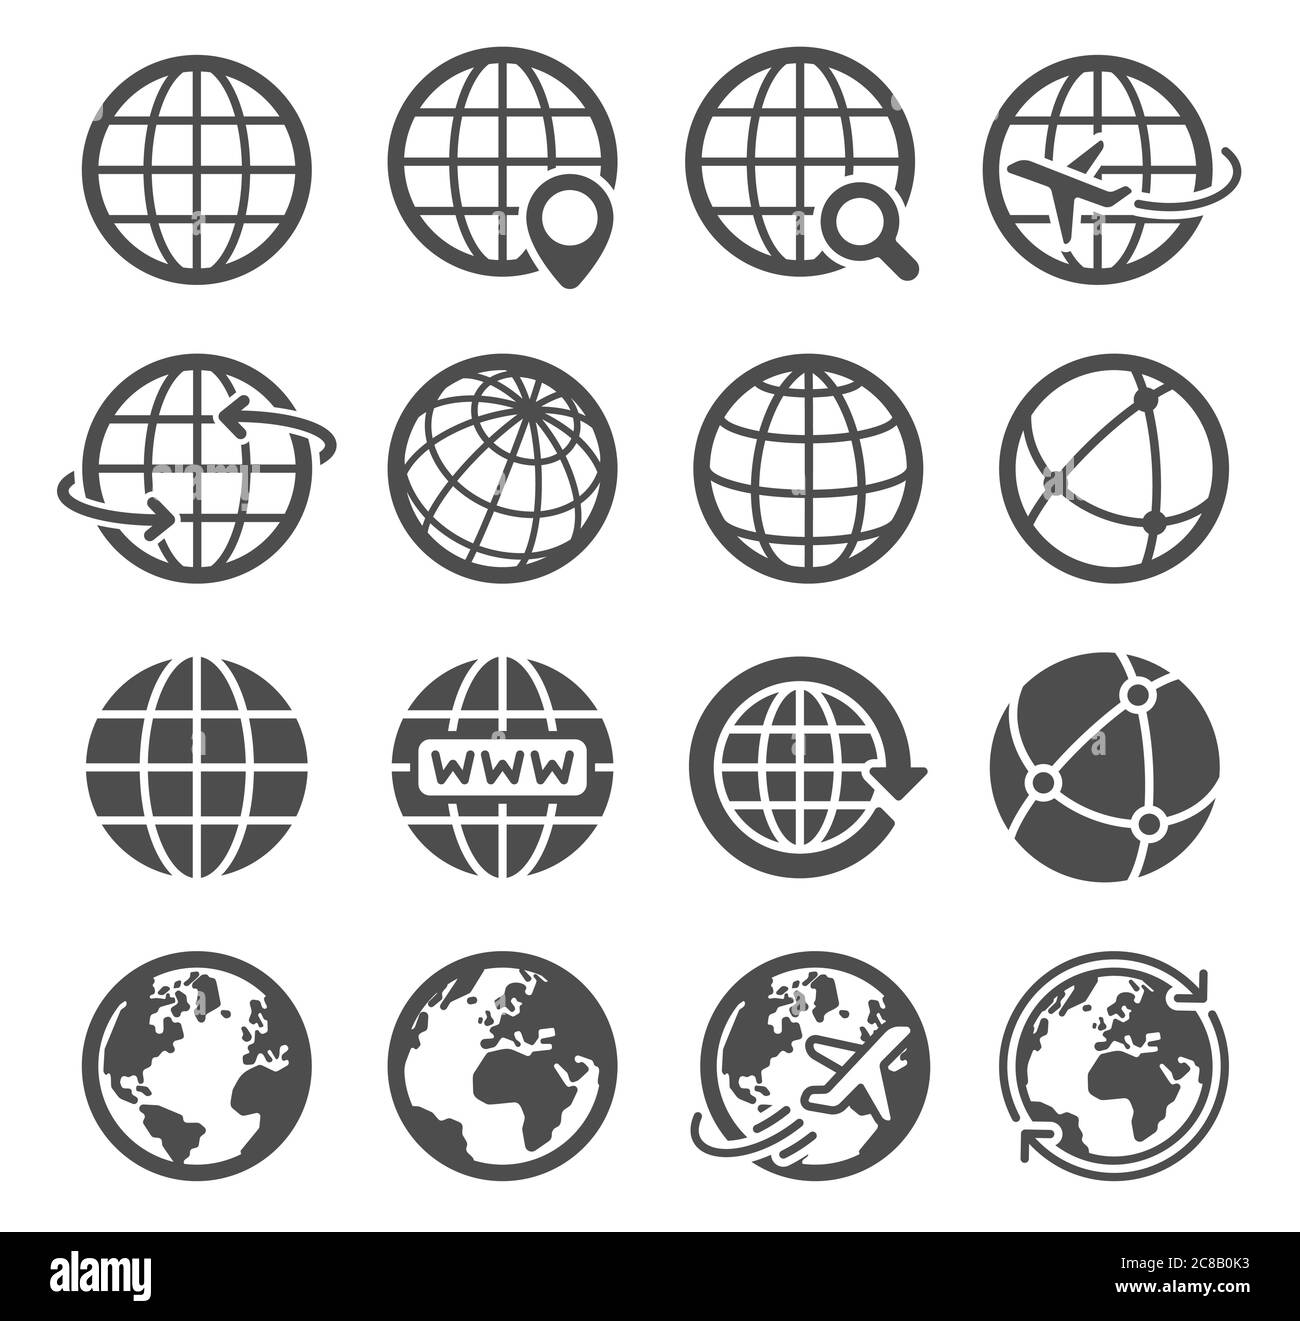 Icônes globe terrestre. Carte mondiale planète sphérique, géographie contour du continent, orbite mondiale communication mondiale logo du tourisme symboles vectoriels. Internet Illustration de Vecteur